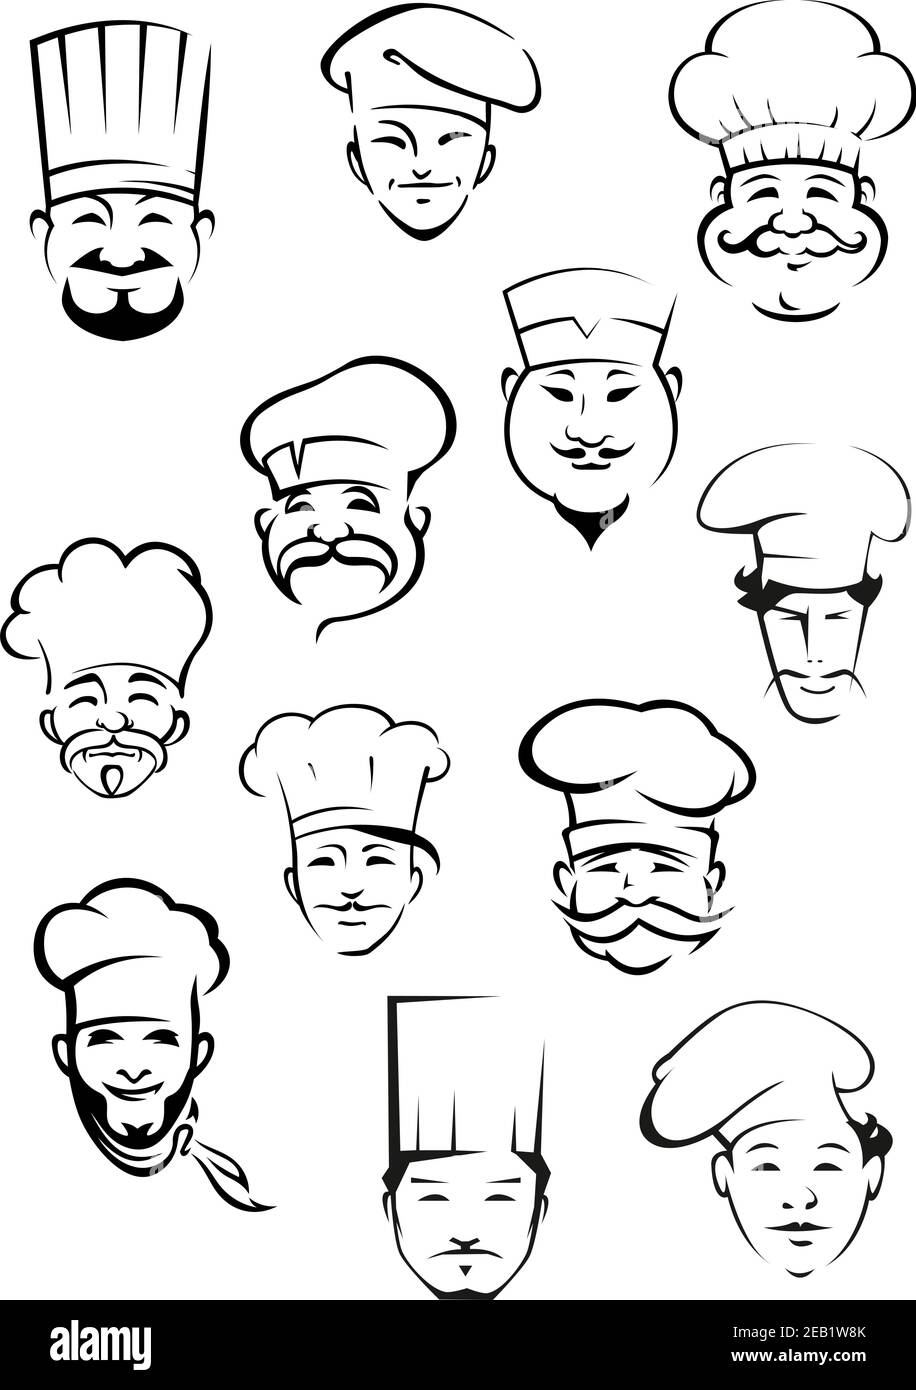 Portraits de chefs professionnels montrant des sourires multiethniques mûrs et jeunes moustachés hommes dans des toques traditionnelles pour le personnel de cuisine ou de restaurant desi Illustration de Vecteur